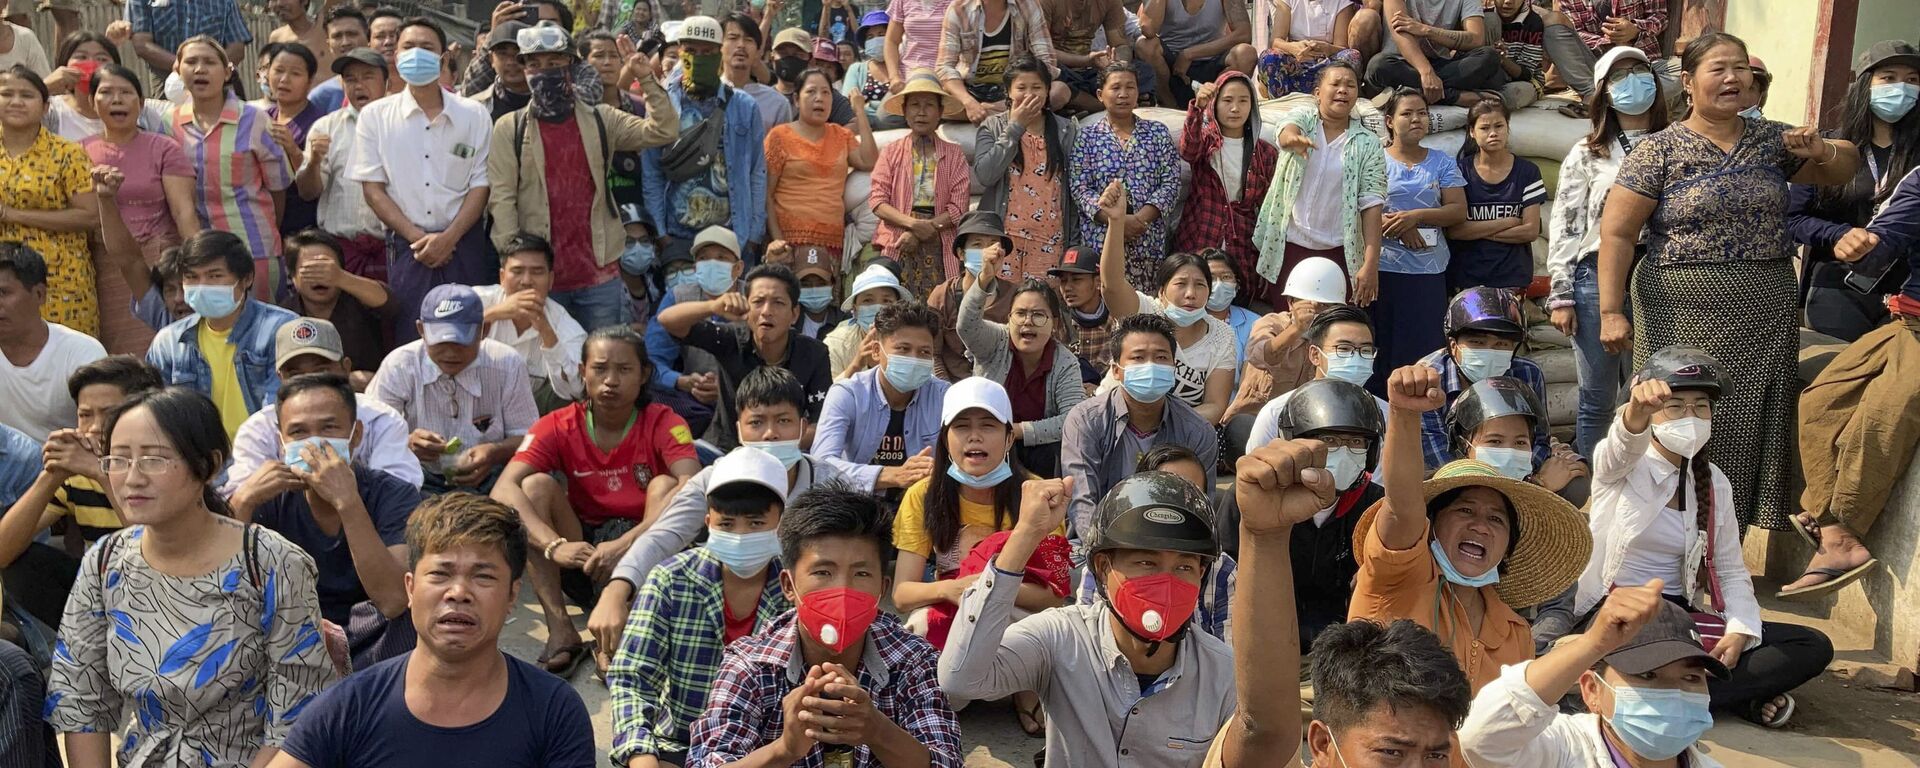 Người biểu tình phản đối đảo chính quân sự ở Mandalay, Myanmar. - Sputnik Việt Nam, 1920, 07.07.2021